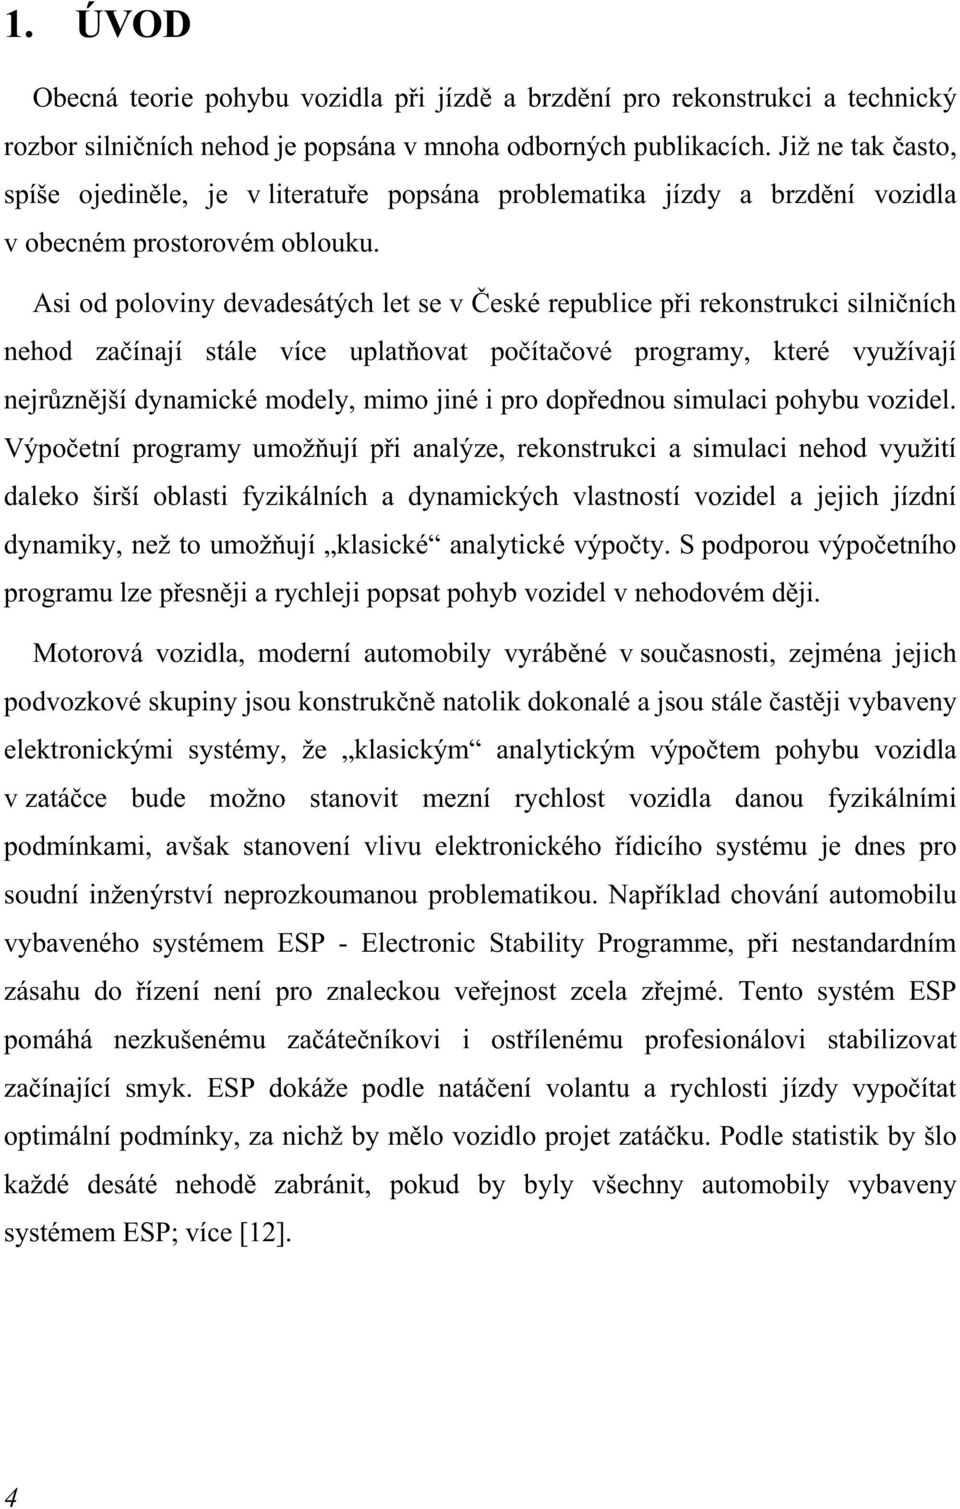 Asi od poloviny devadesátých let se v České republice při rekonstrukci silničních nehod začínají stále více uplatňovat počítačové programy, které využívají nejrůznější dynamické modely, mimo jiné i